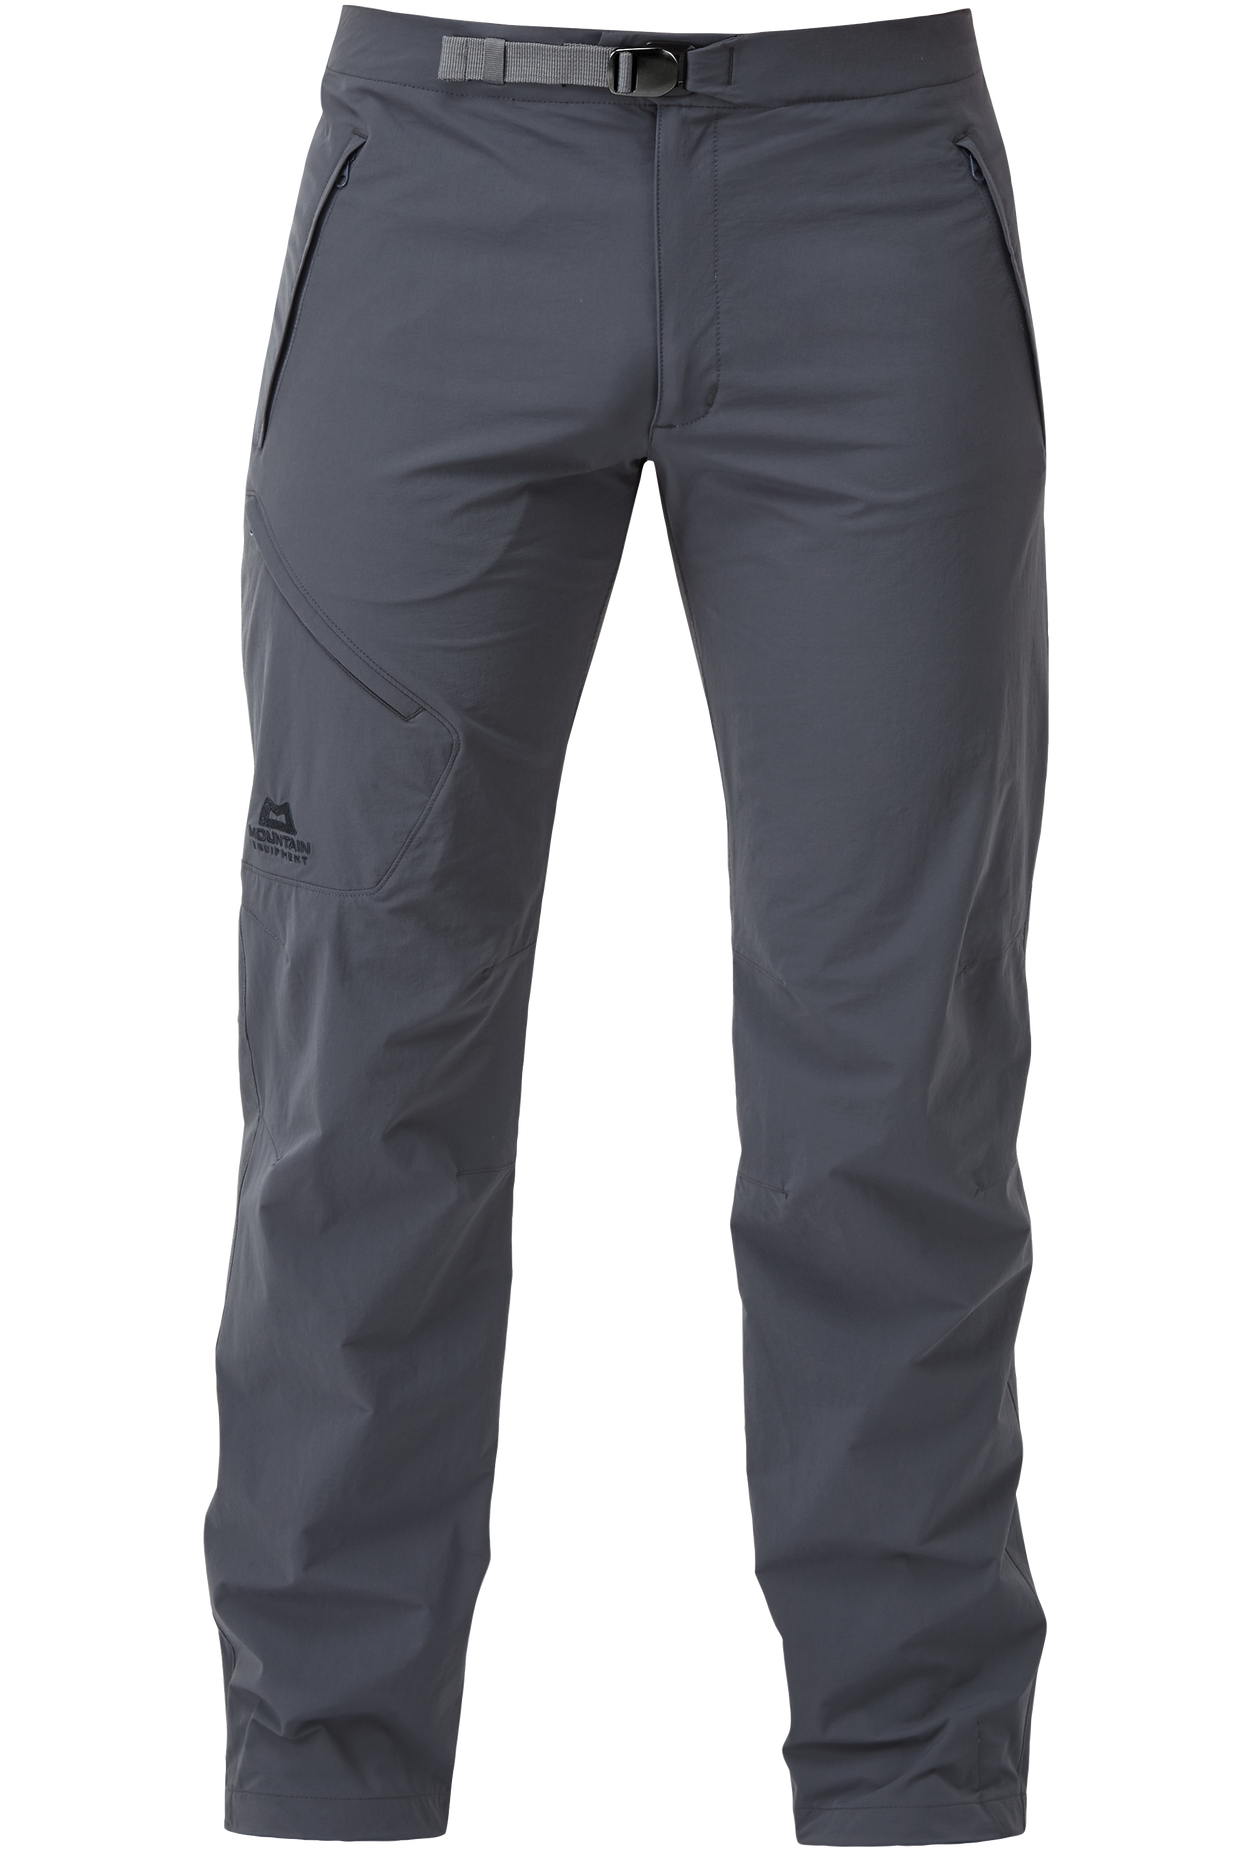 Mountain Equipment pánské softshellové kalhoty Comici Pant - prodloužené Barva: Ombre Blue, Velikost: 32/M